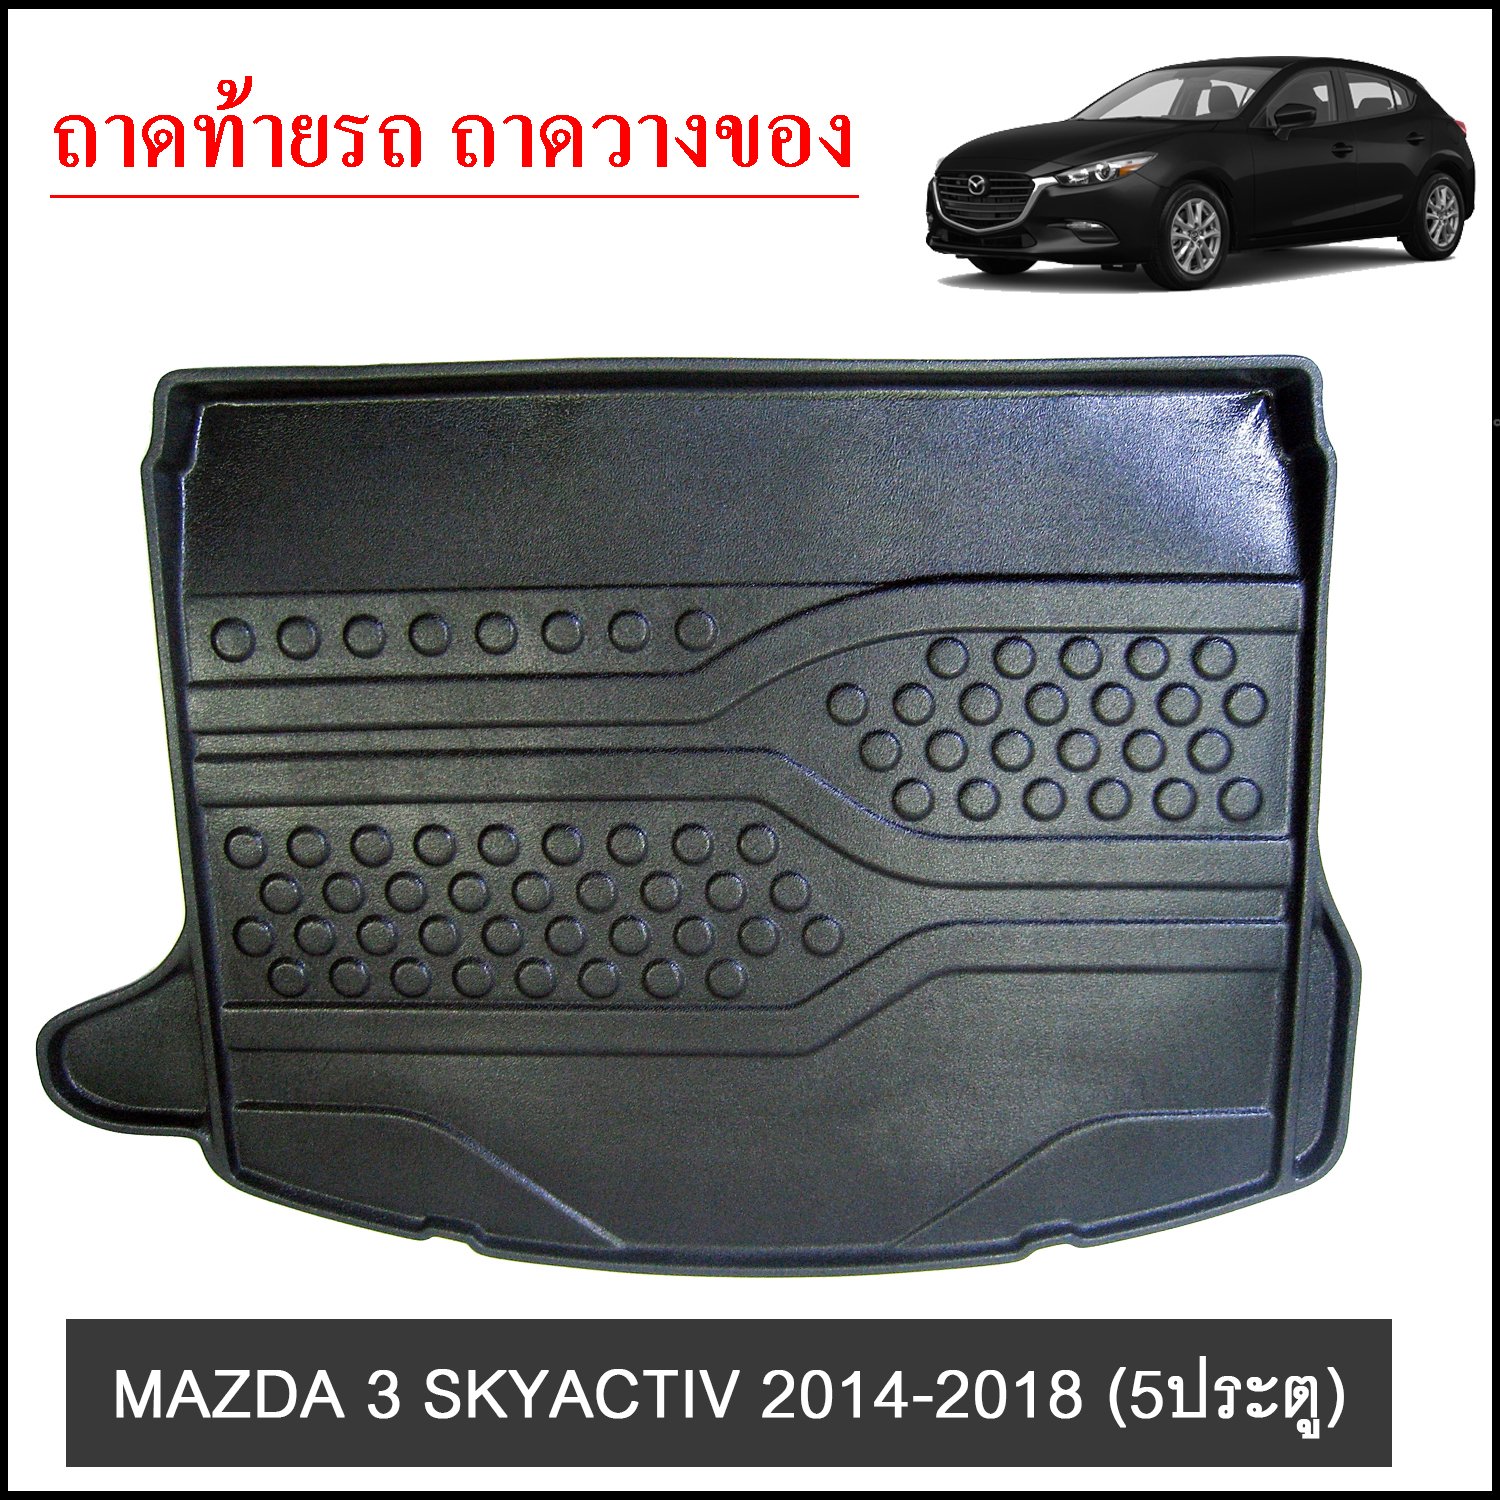 ถาดท้ายวางของ MAZDA 3 SKYACTIV 2014-2018 5ประตู